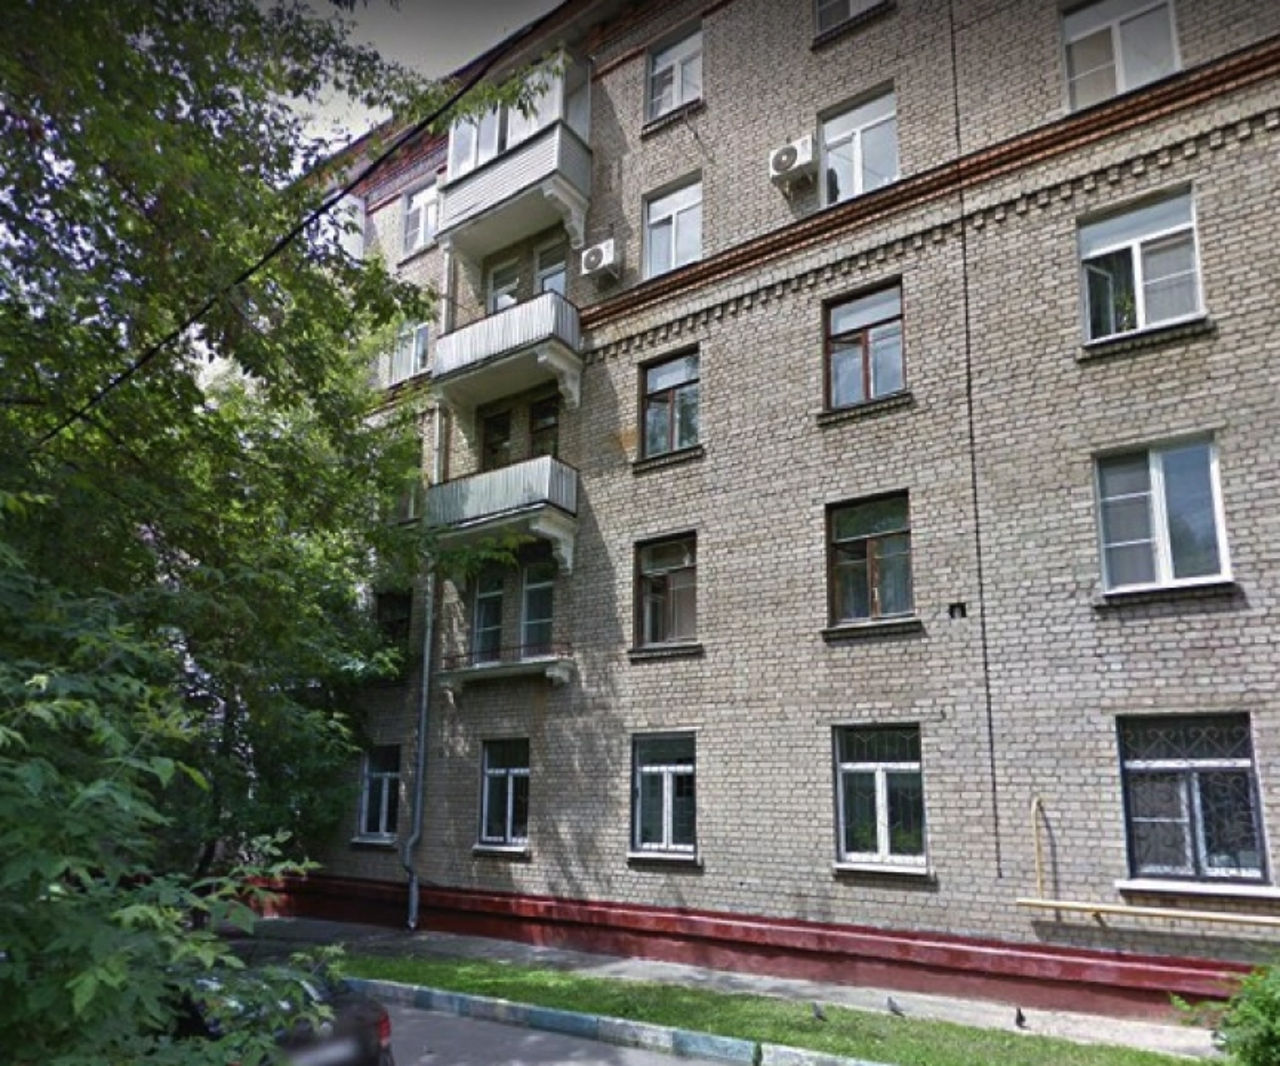 Продам квартиру в Москве по адресу Каширское шоссе, 56к2, площадь 13 квм Недвижимость Москва (Россия)  Помещение в нежилом фонде, прописка не предполагается